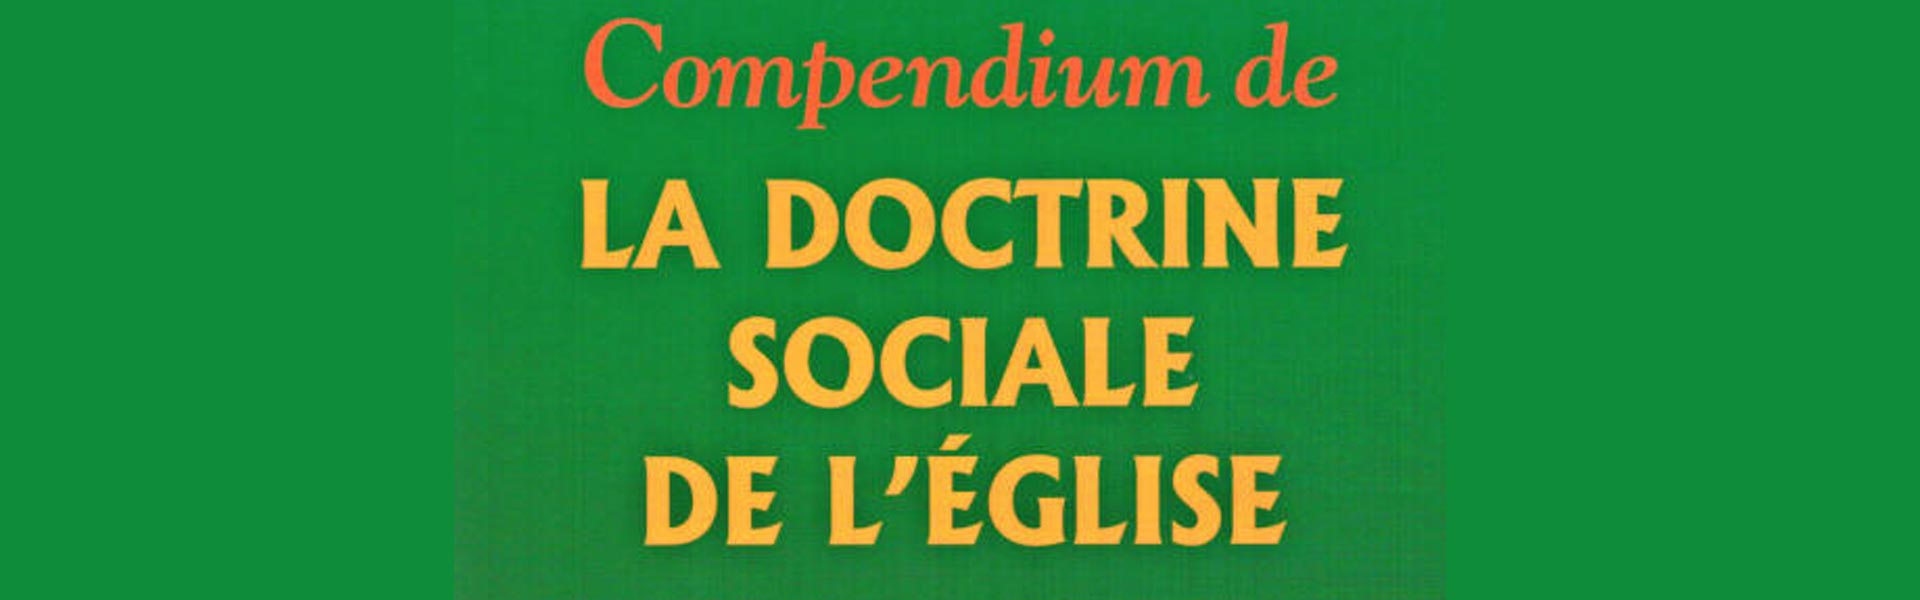 Lancement du parcours sur la doctrine sociale de l’Eglise à Laval le 12 octobre